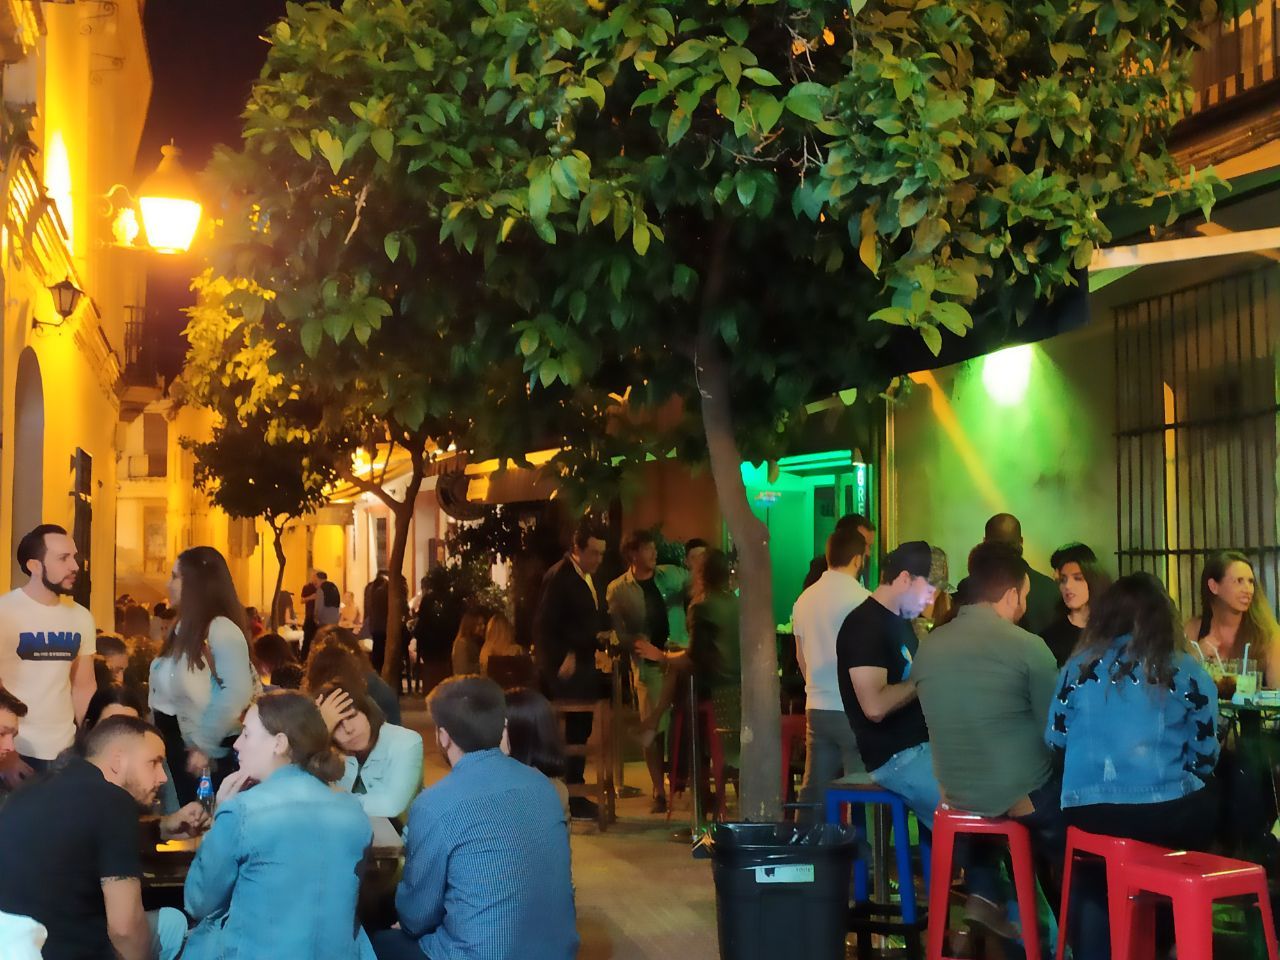 La calle San Pablo del centro de Jerez, una de las zonas más frecuentadas para salir, la noche de este sábado.